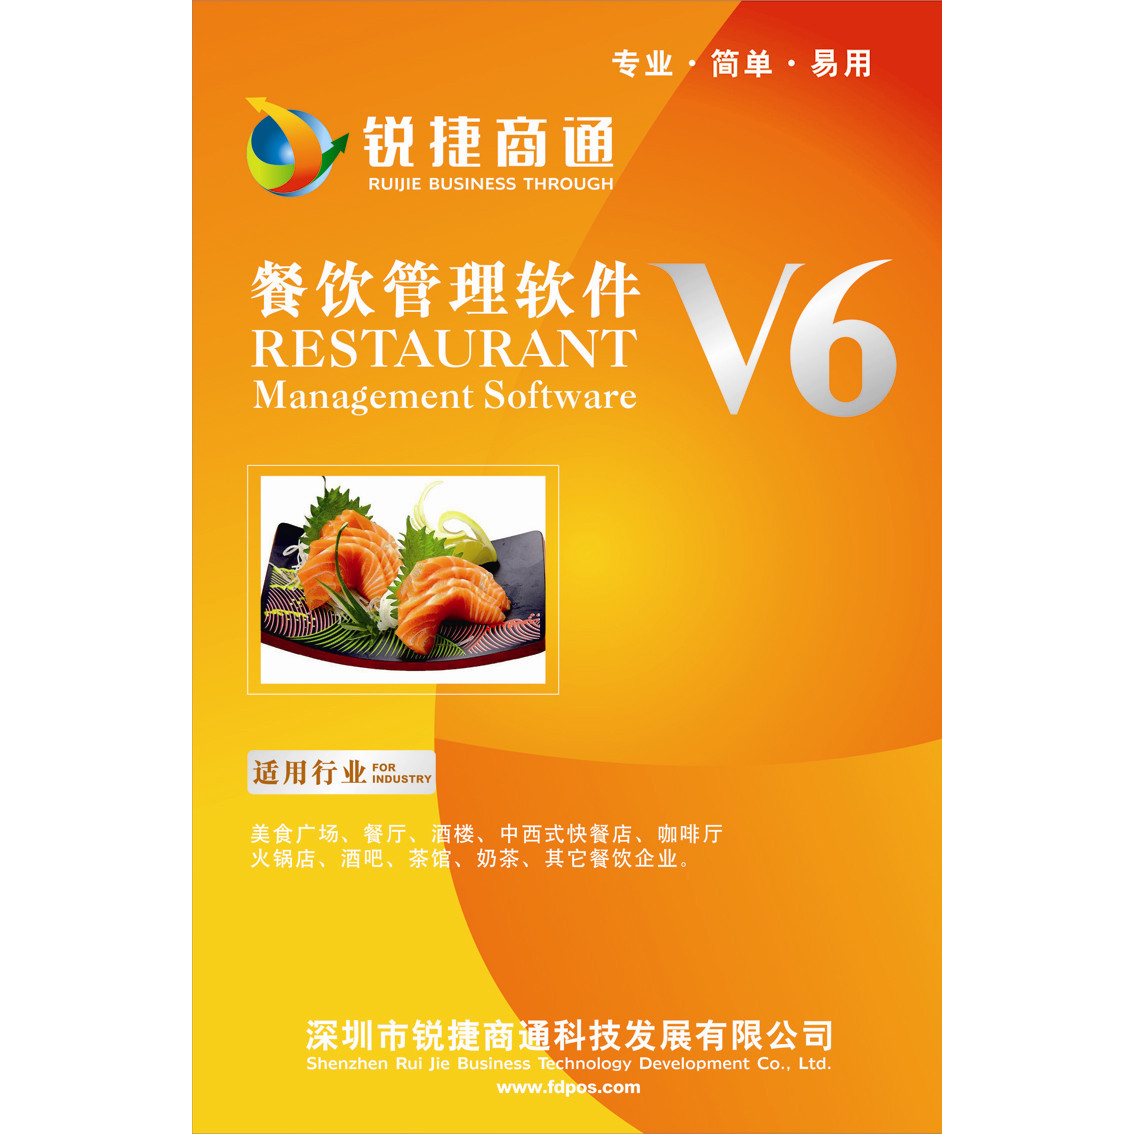 锐捷商通餐饮管理软件V6 美食餐厅 酒楼酒吧 咖